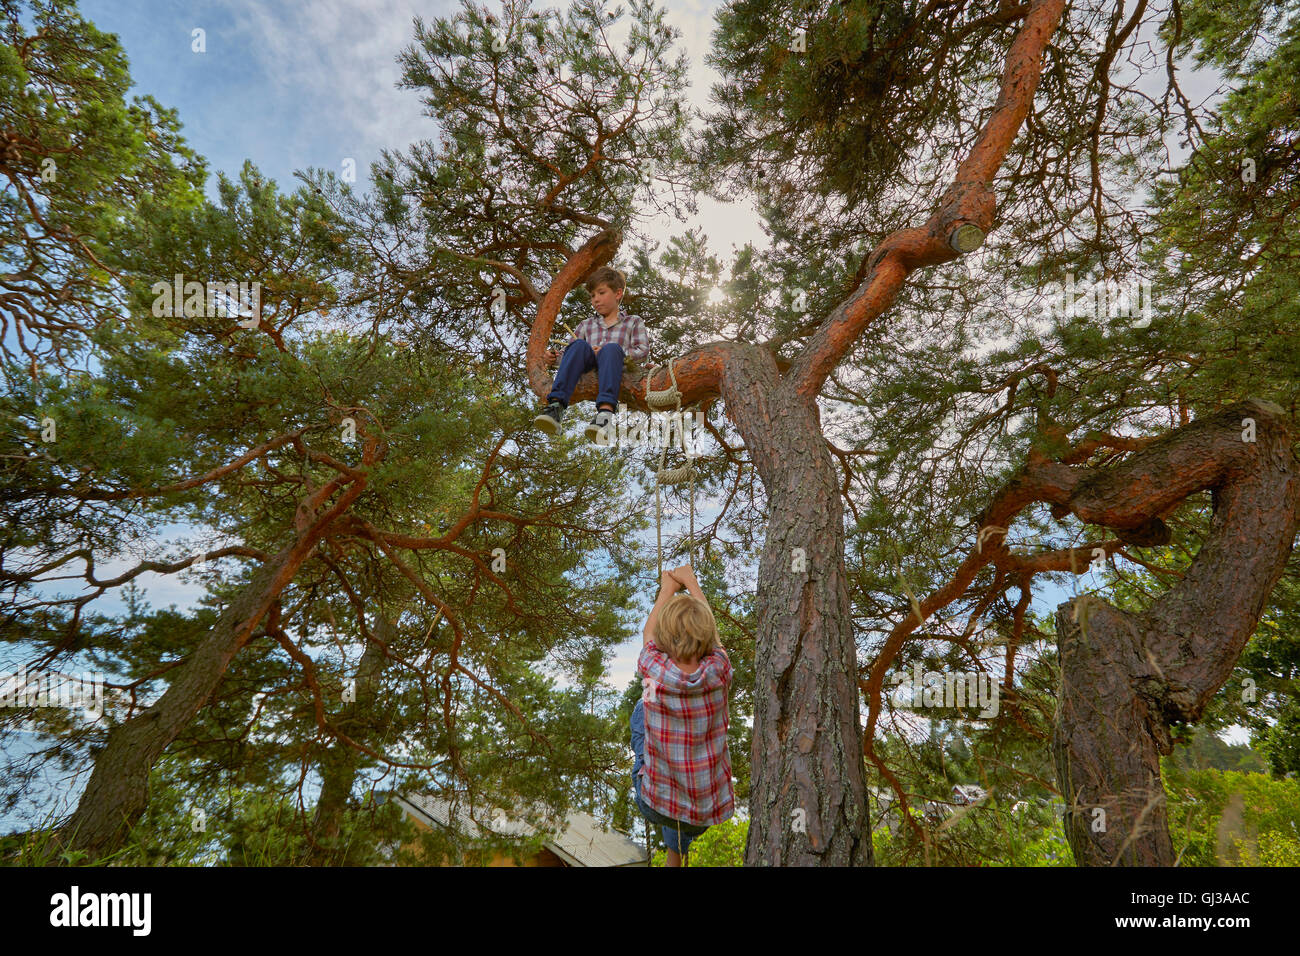 Jeune garçon assis dans un arbre, son ami échelle de corde d'escalade sur un arbre pour le rejoindre Banque D'Images